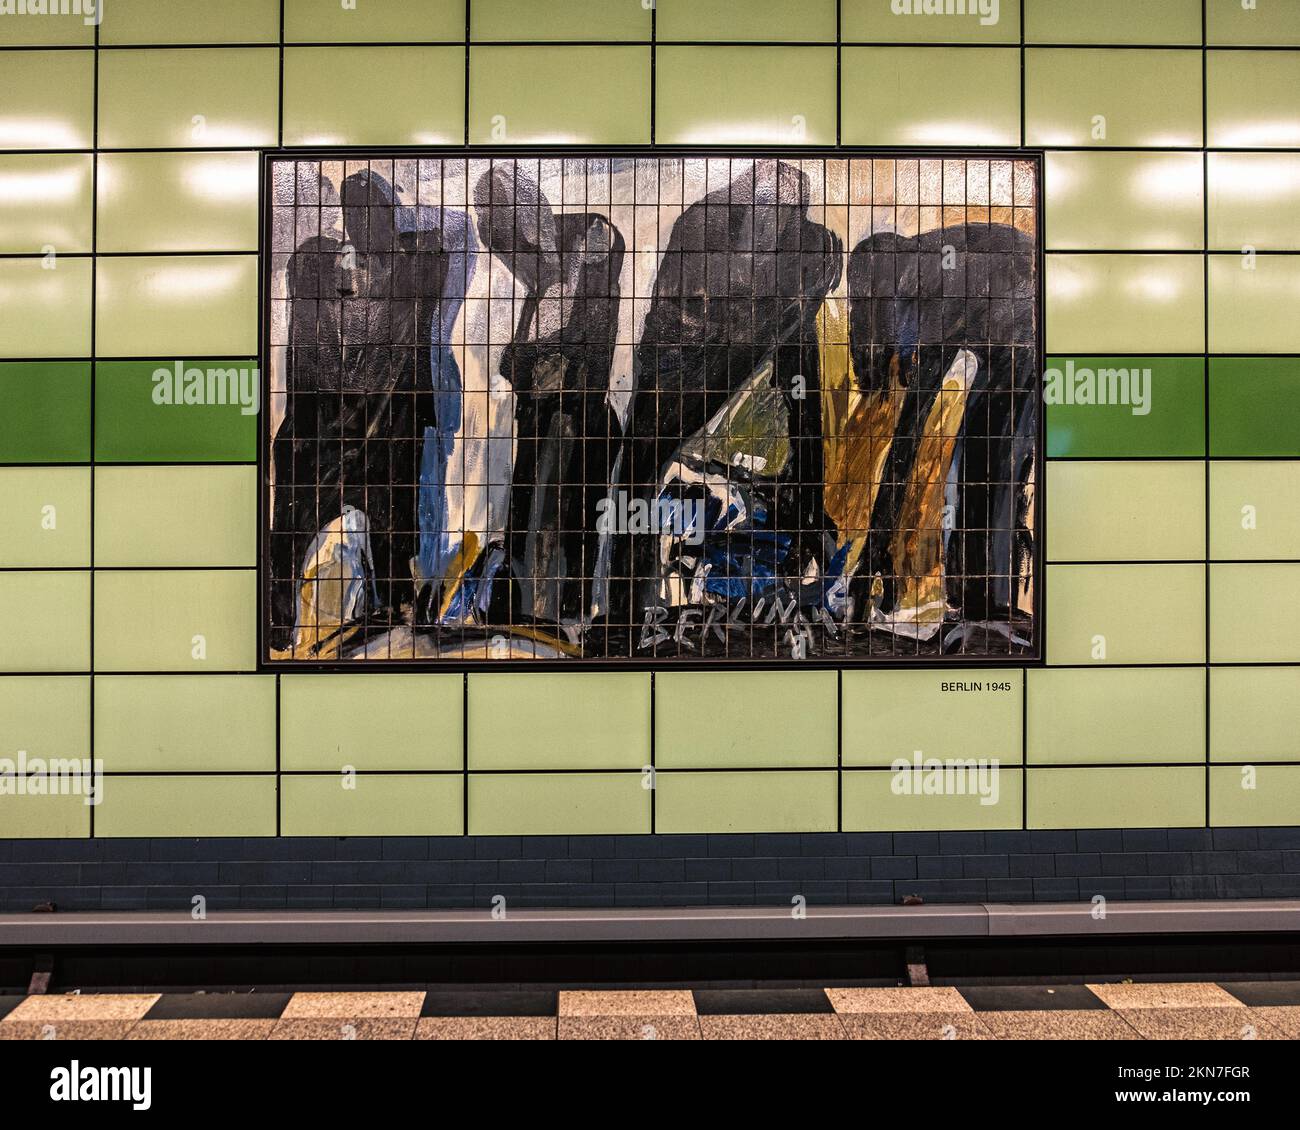 U5 Magdalenenstrasse U-Bahn estación de metro interior de baldosas verdes, Lichtenberg, Berlín Mural obras de arte registra la historia del socialismo Foto de stock